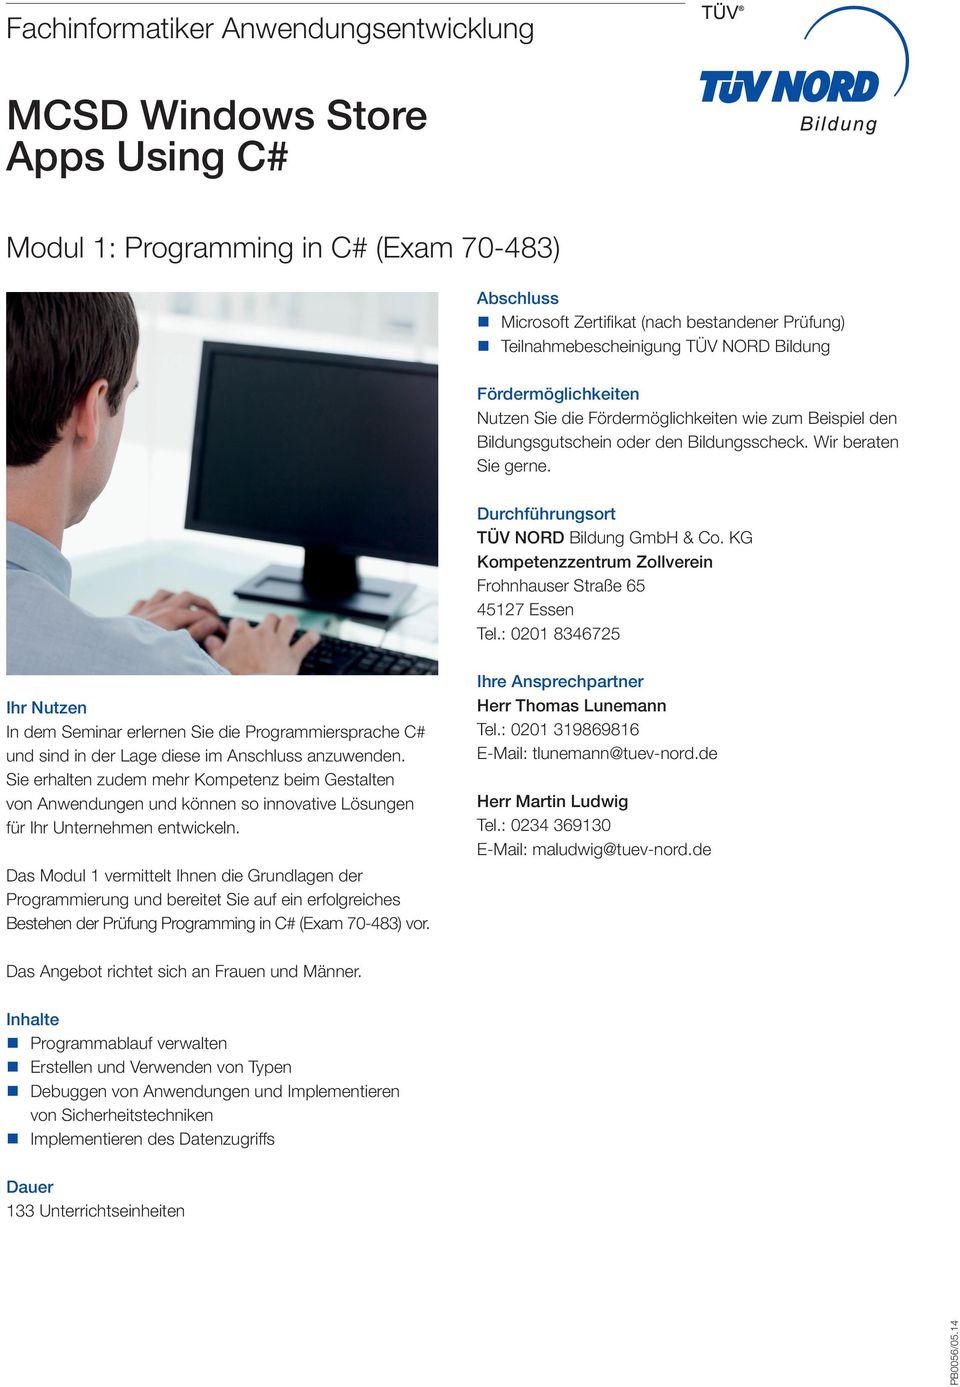 Das Modul 1 vermittelt Ihnen die Grundlagen der Programmierung und bereitet Sie auf ein erfolgreiches Bestehen der Prüfung Programming in C# (Exam 70-483) vor.